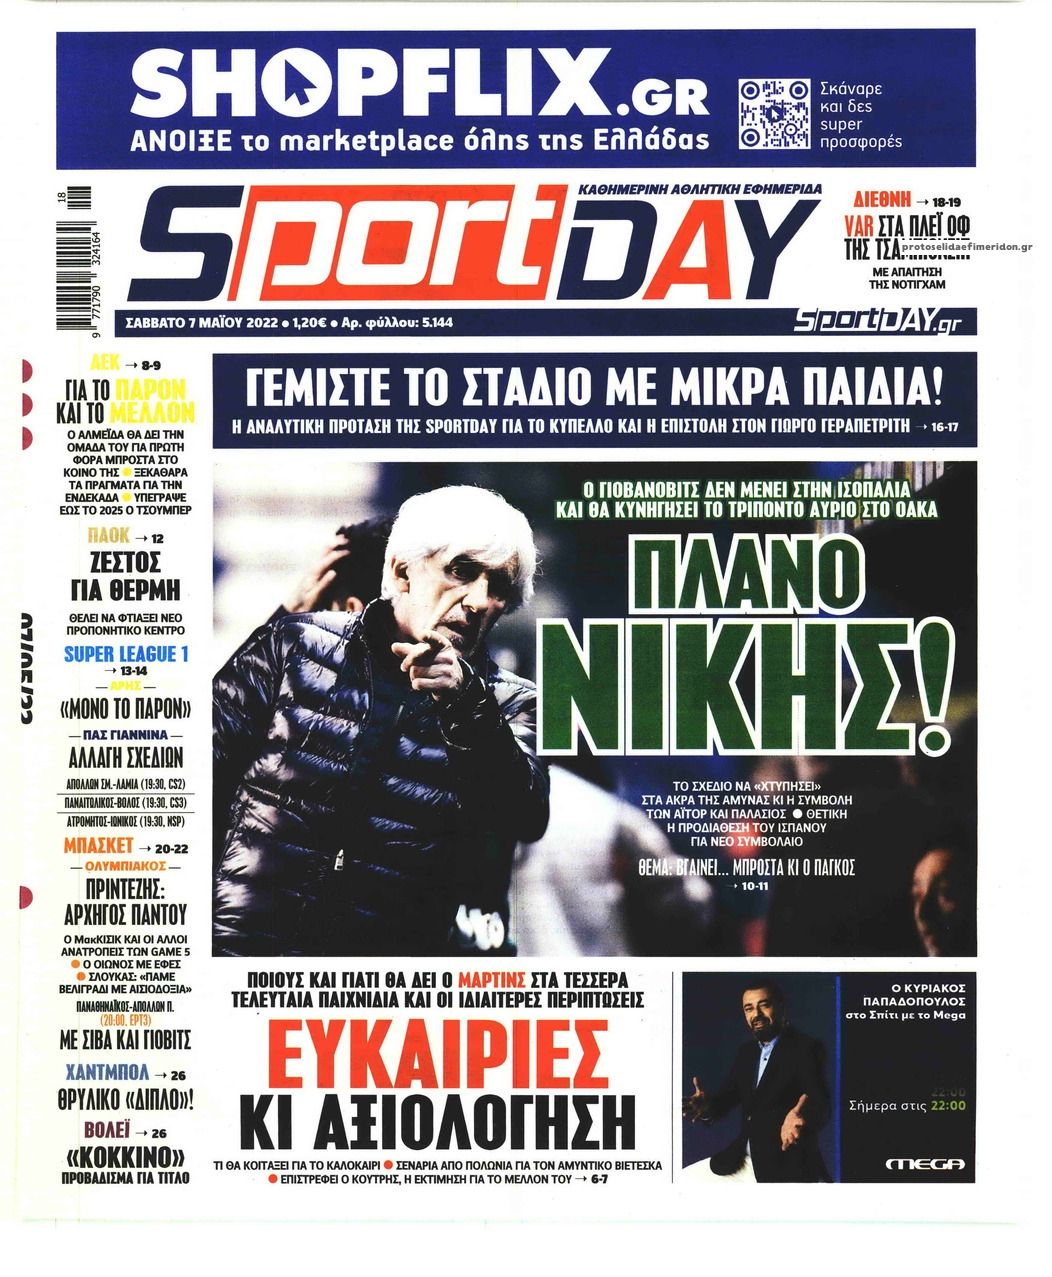 Πρωτοσέλιδο εφημερίδας Sportday